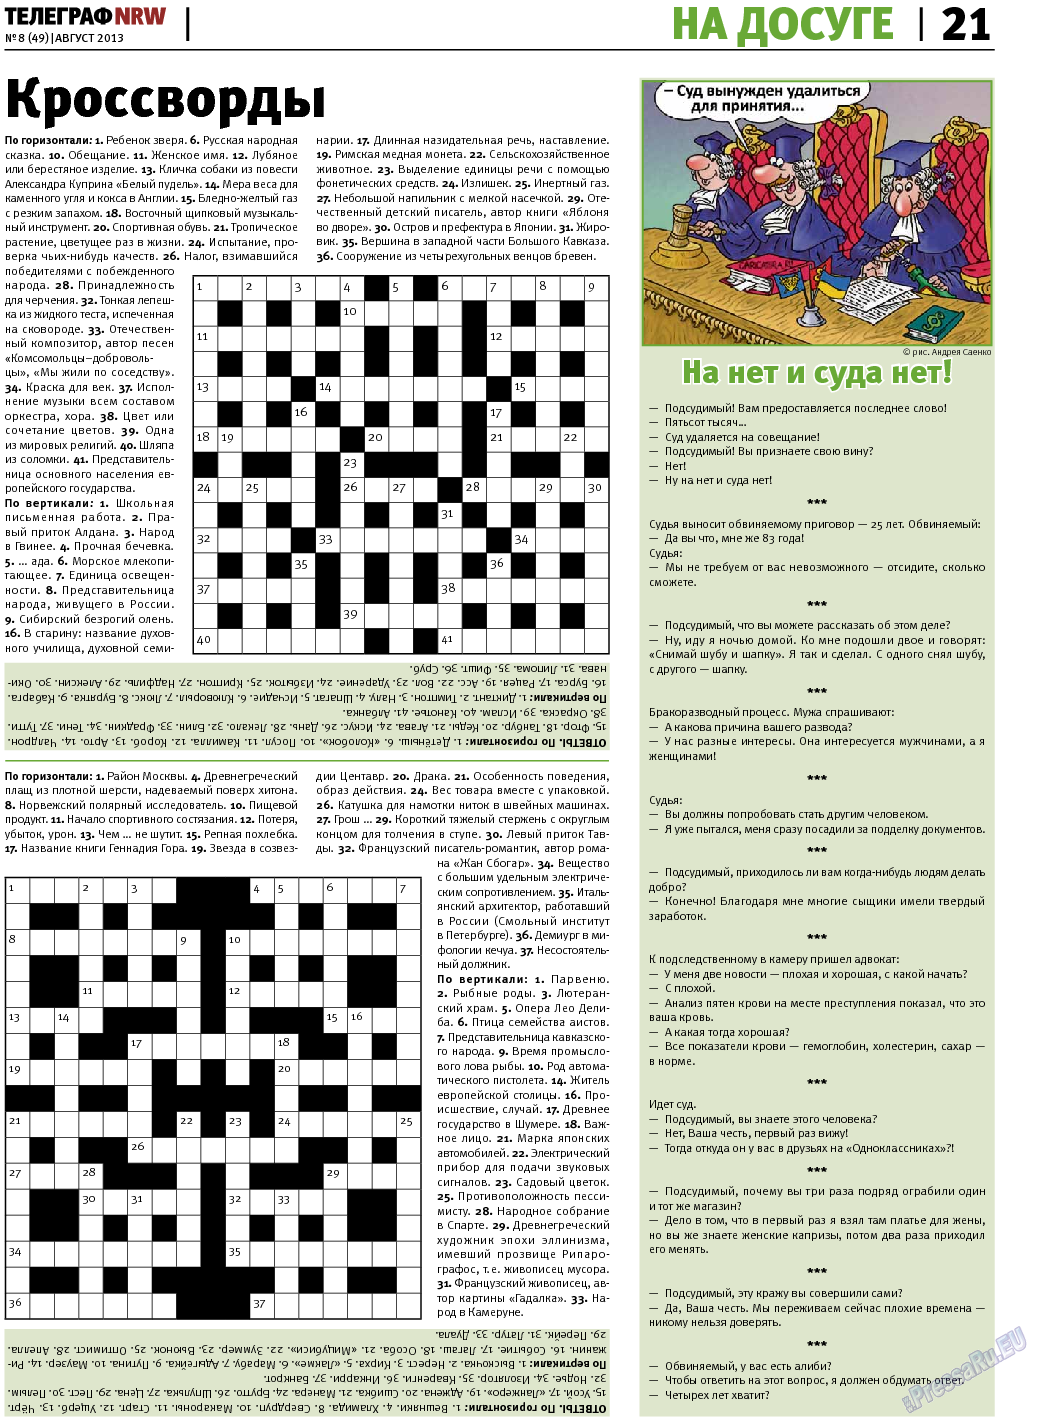 Телеграф NRW (газета). 2013 год, номер 8, стр. 21